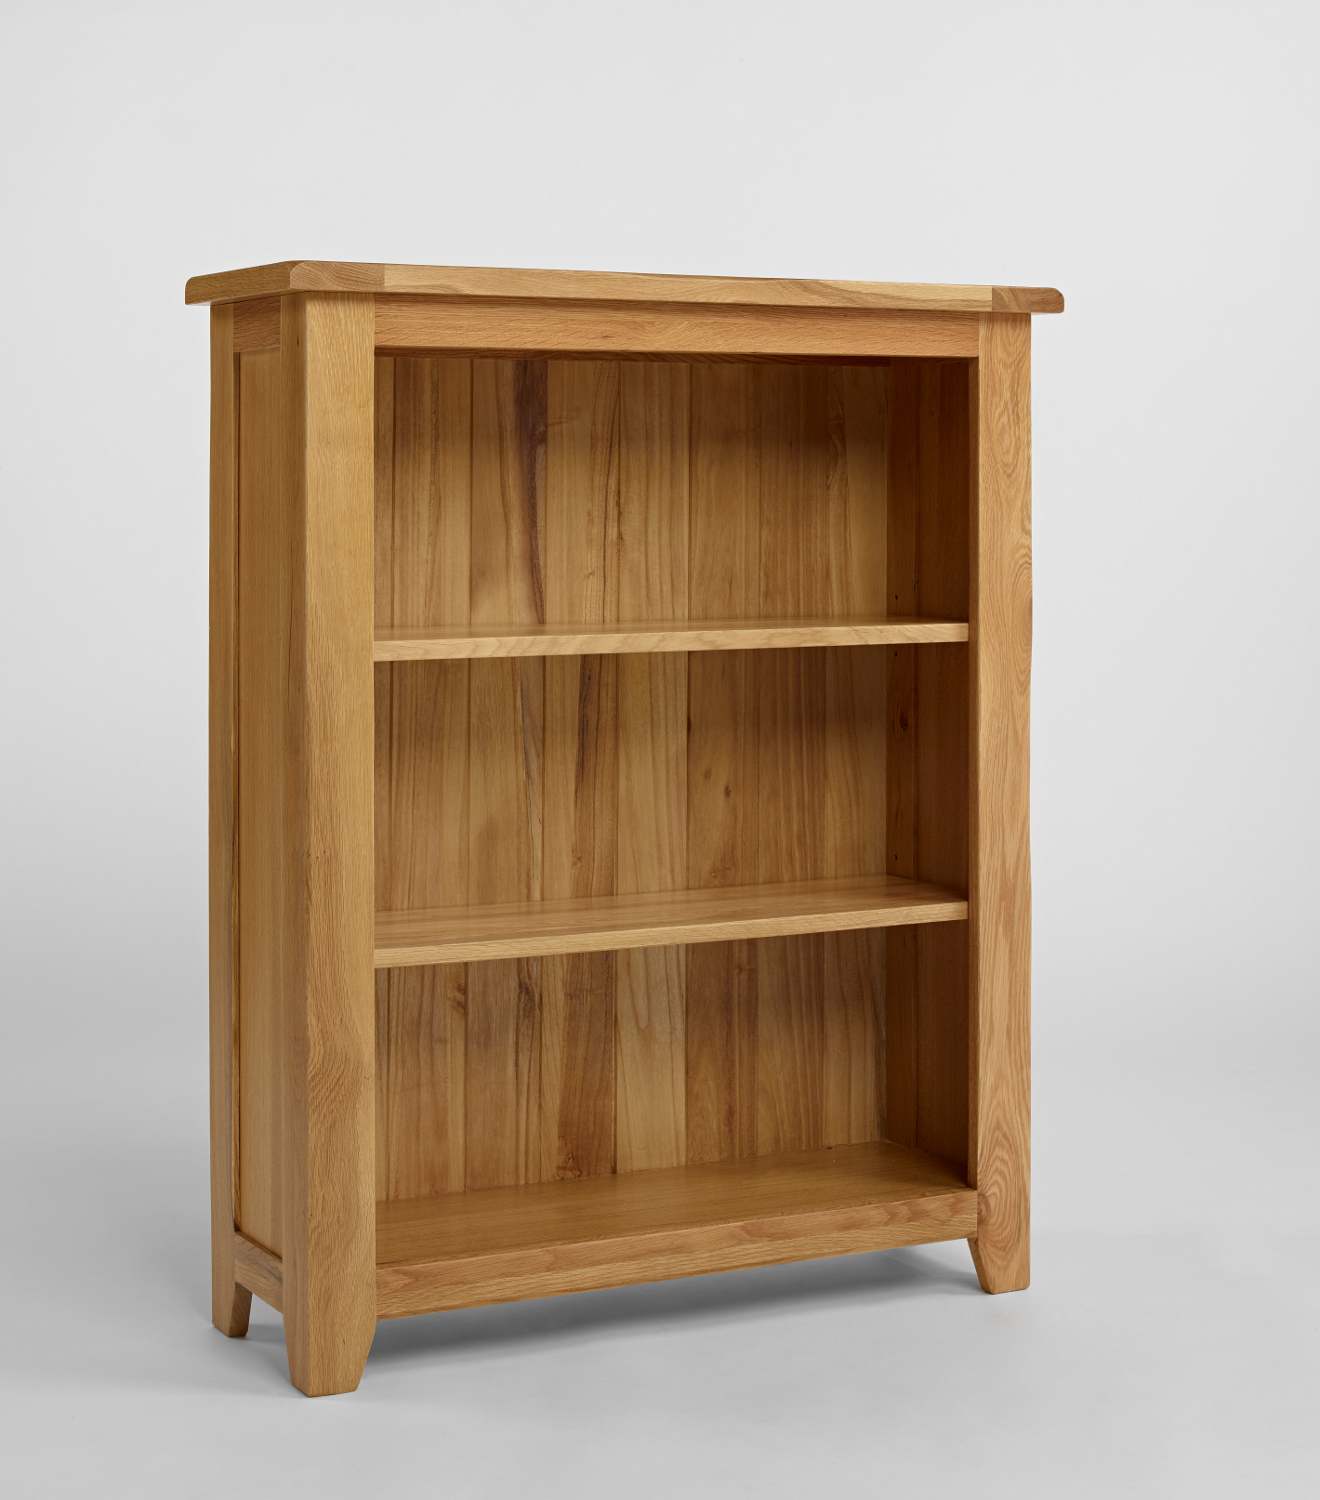 Westbury Reclaimed Oak Low Bookcase